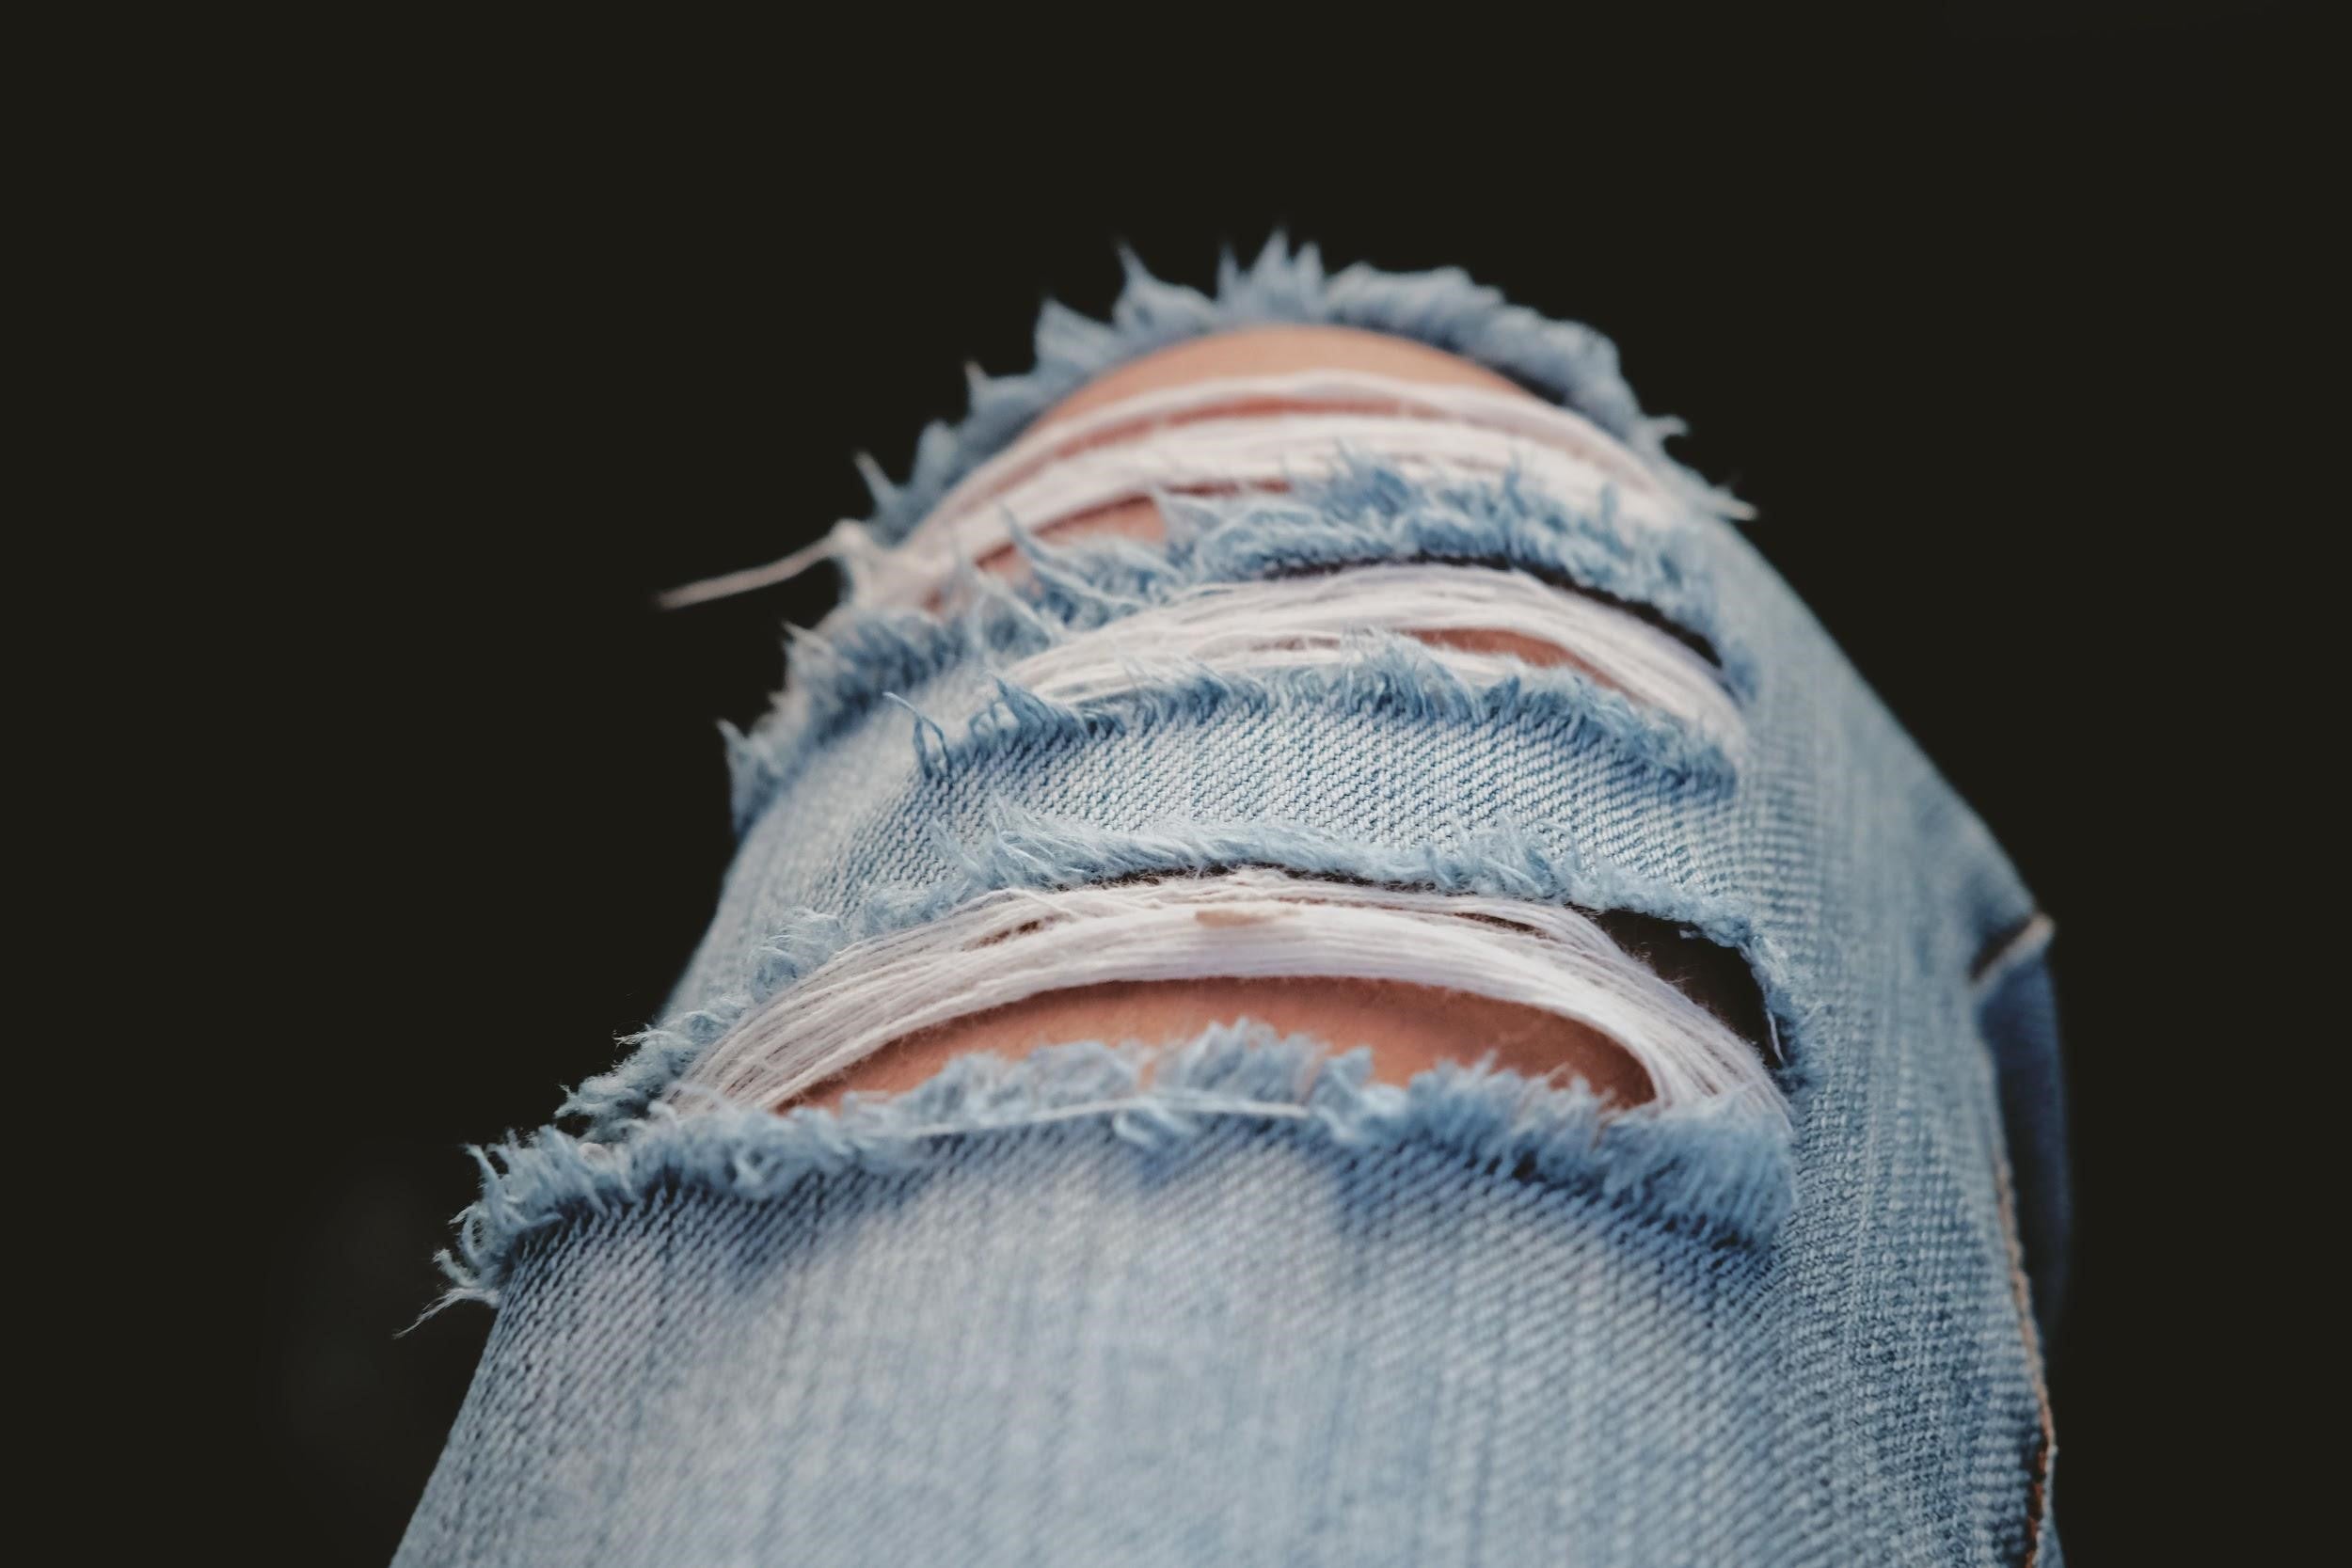 arregla jeans con hilo, hilos Gütermann